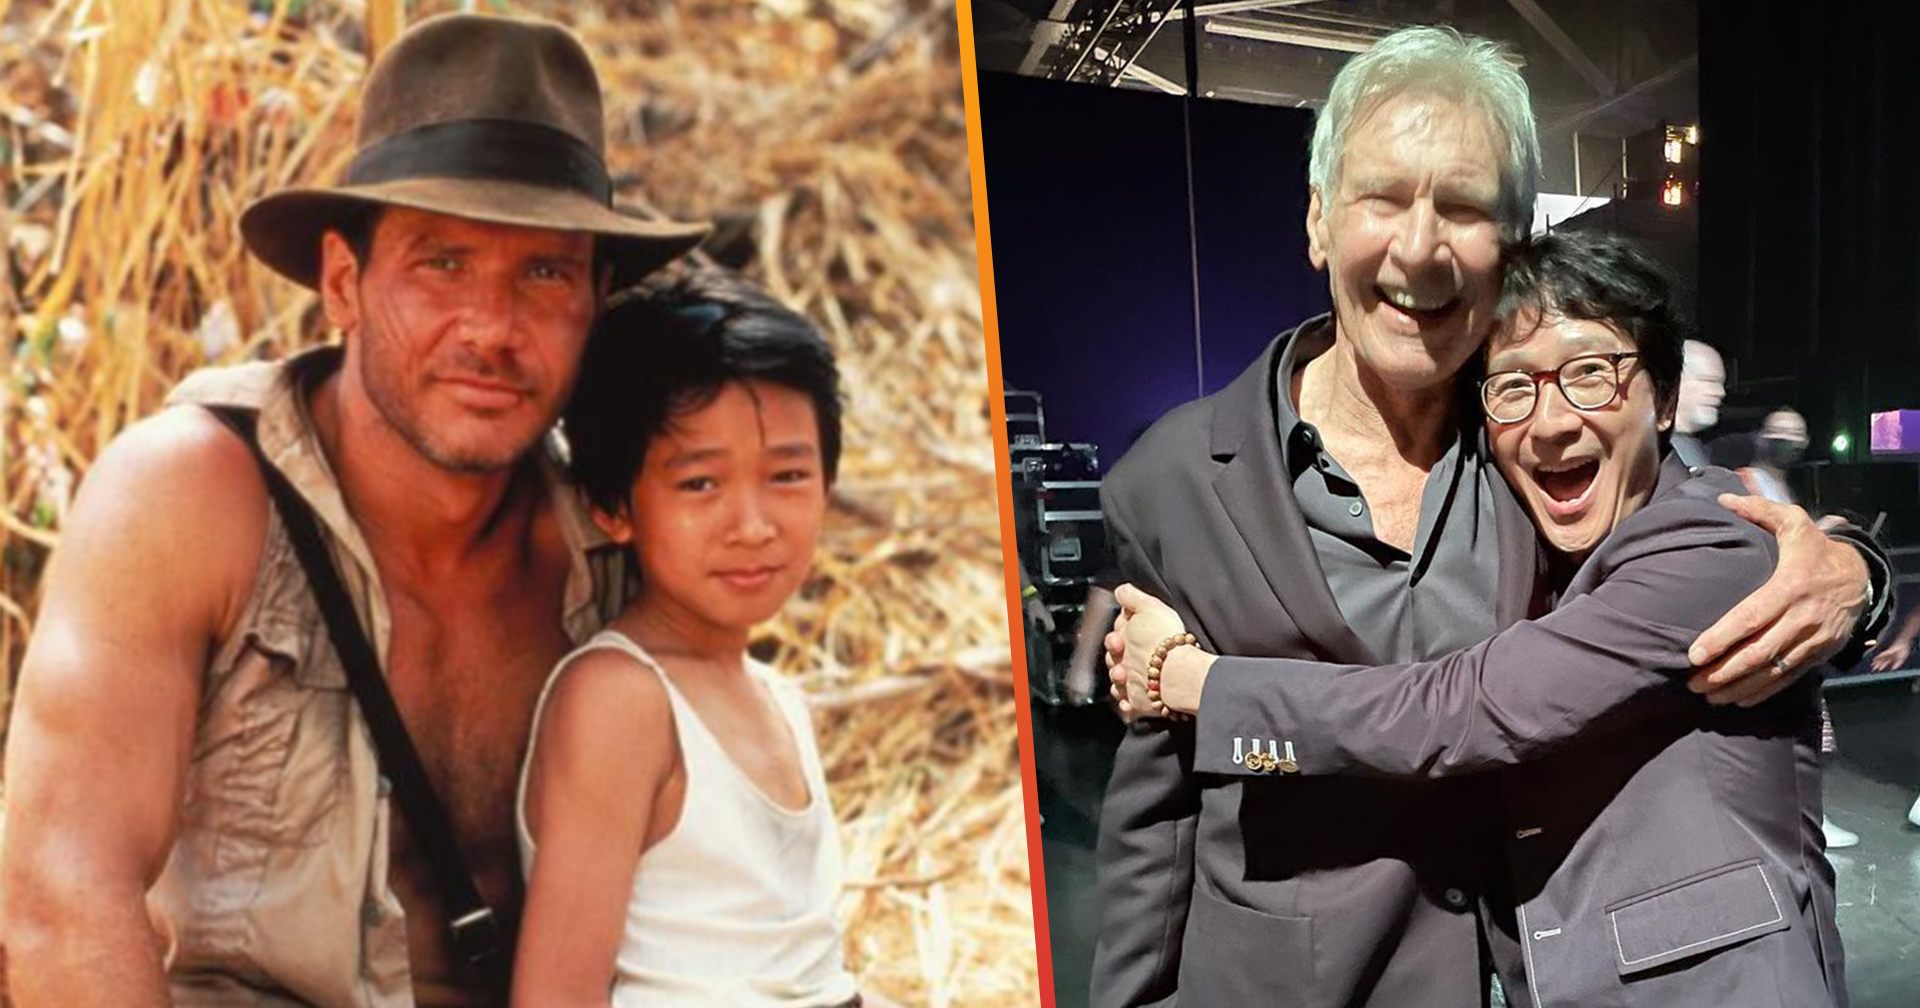 Harrison Ford – Ke Huy Quan นักแสดงจาก ‘Indiana Jones 2’ กลับมาเจอกันอีกครั้งในรอบ 38 ปี กลางงาน D23 Expo